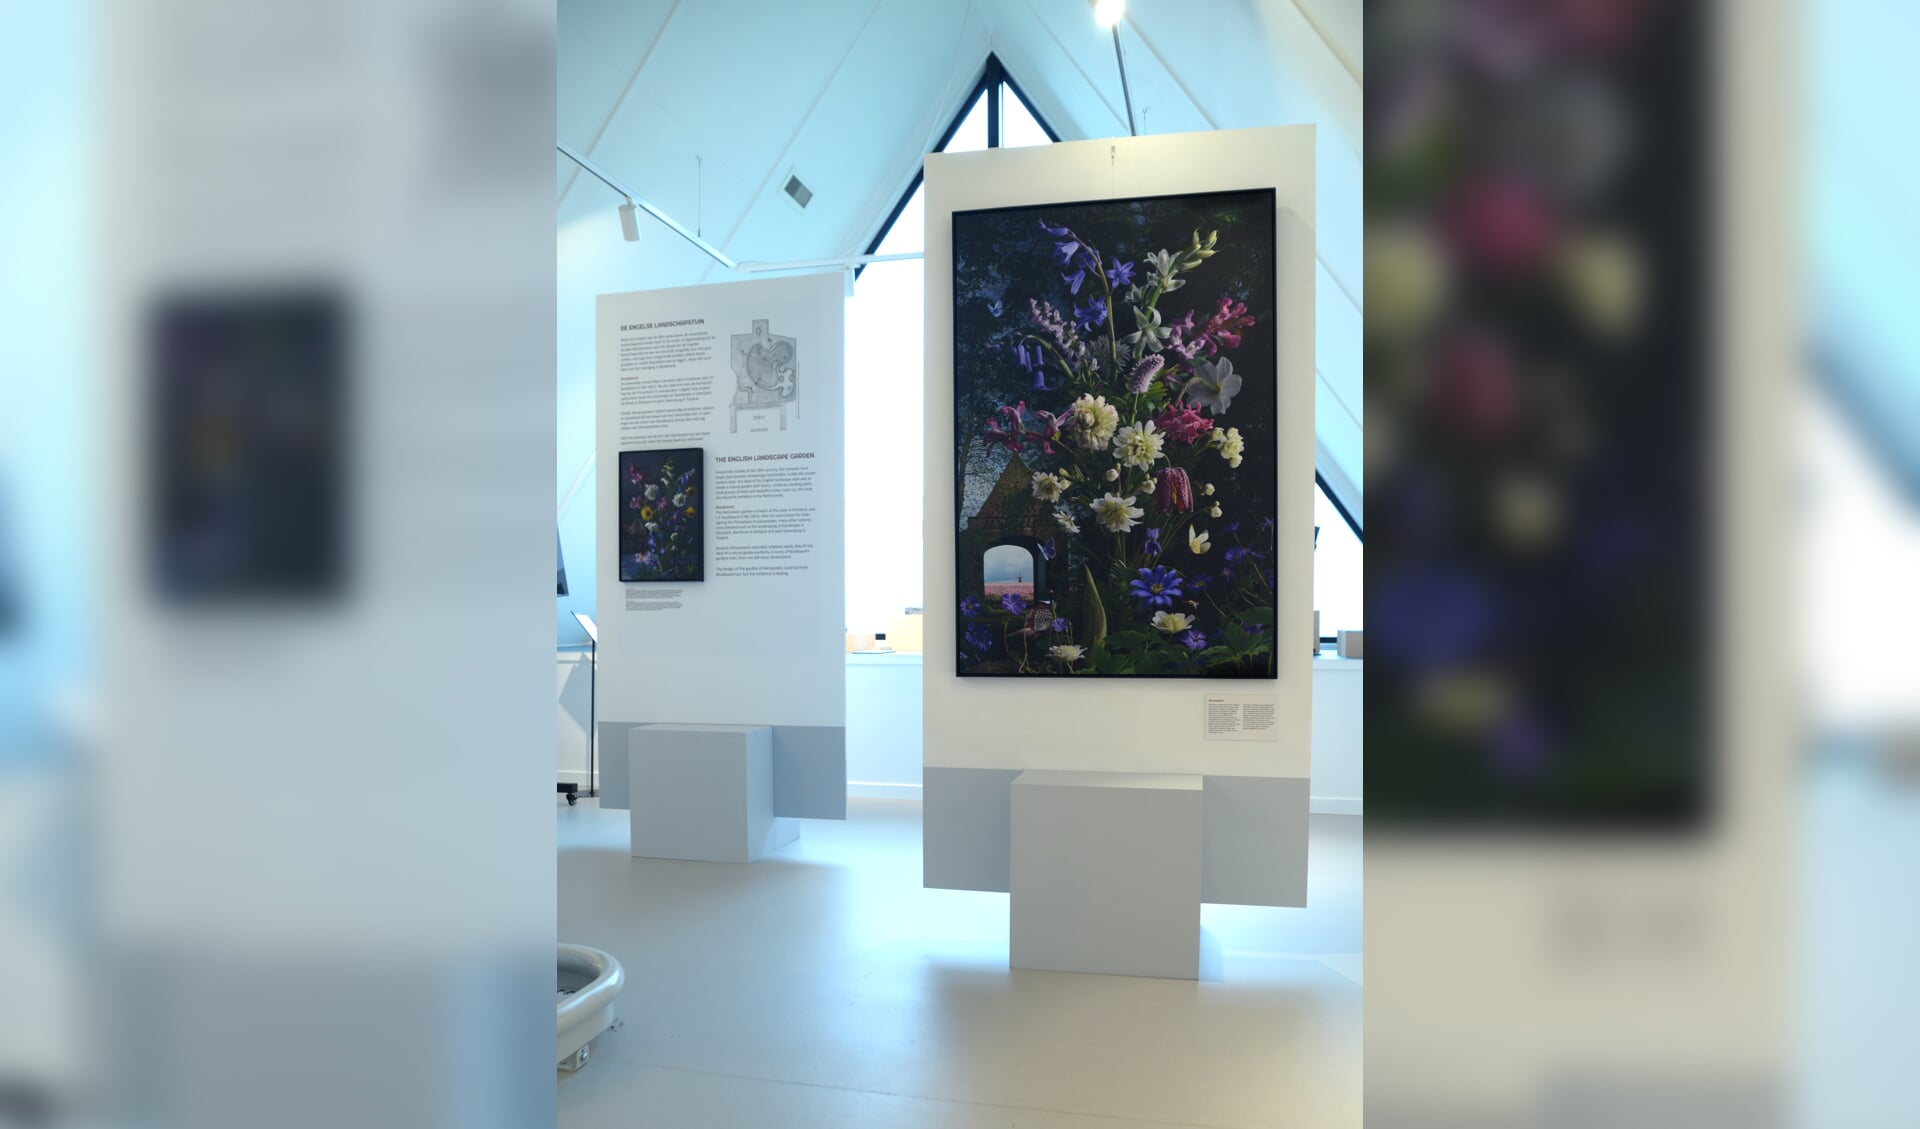 De expositie van Irene Feenstra combineert prachtige stillevens met interessante informatie over stinzenflora.